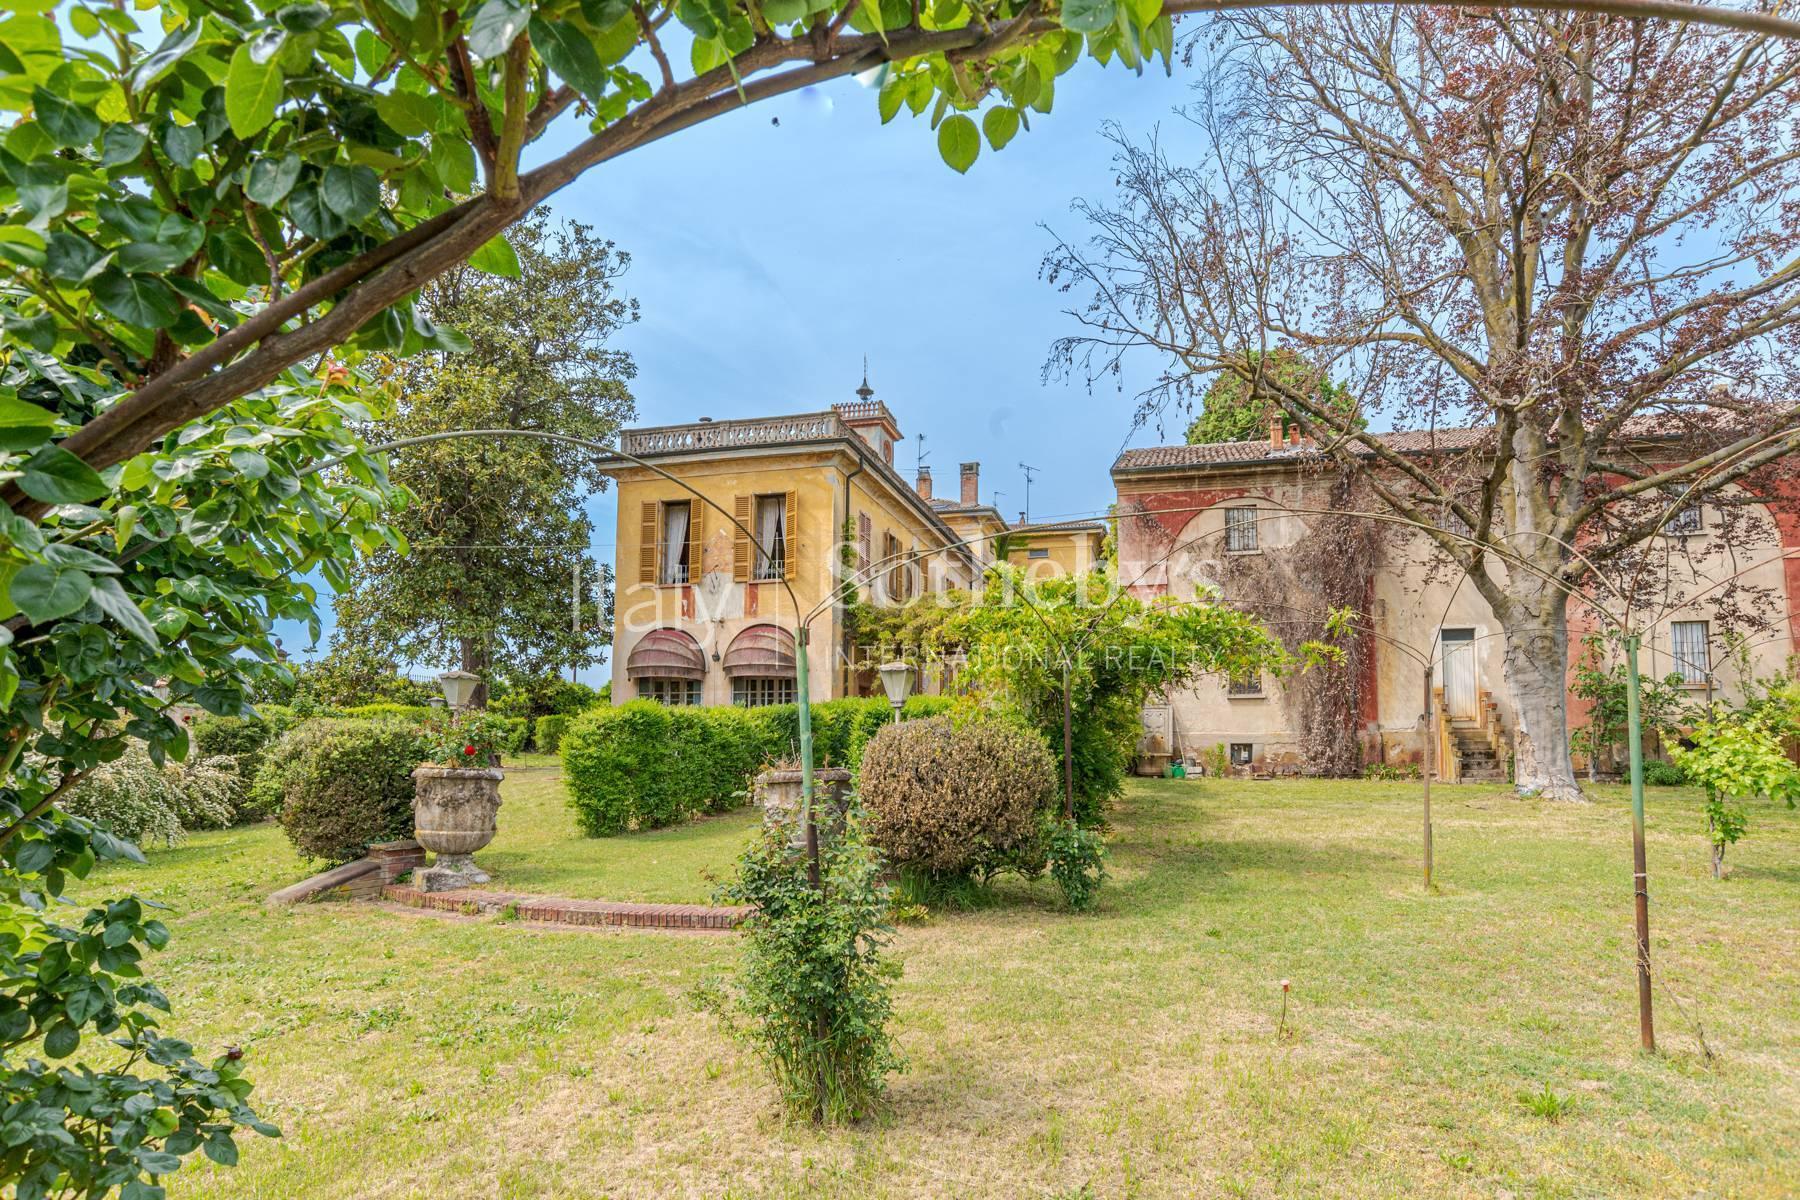 Cascina Bella - 18th century villa with park in Oltrepo' Pavese - 15